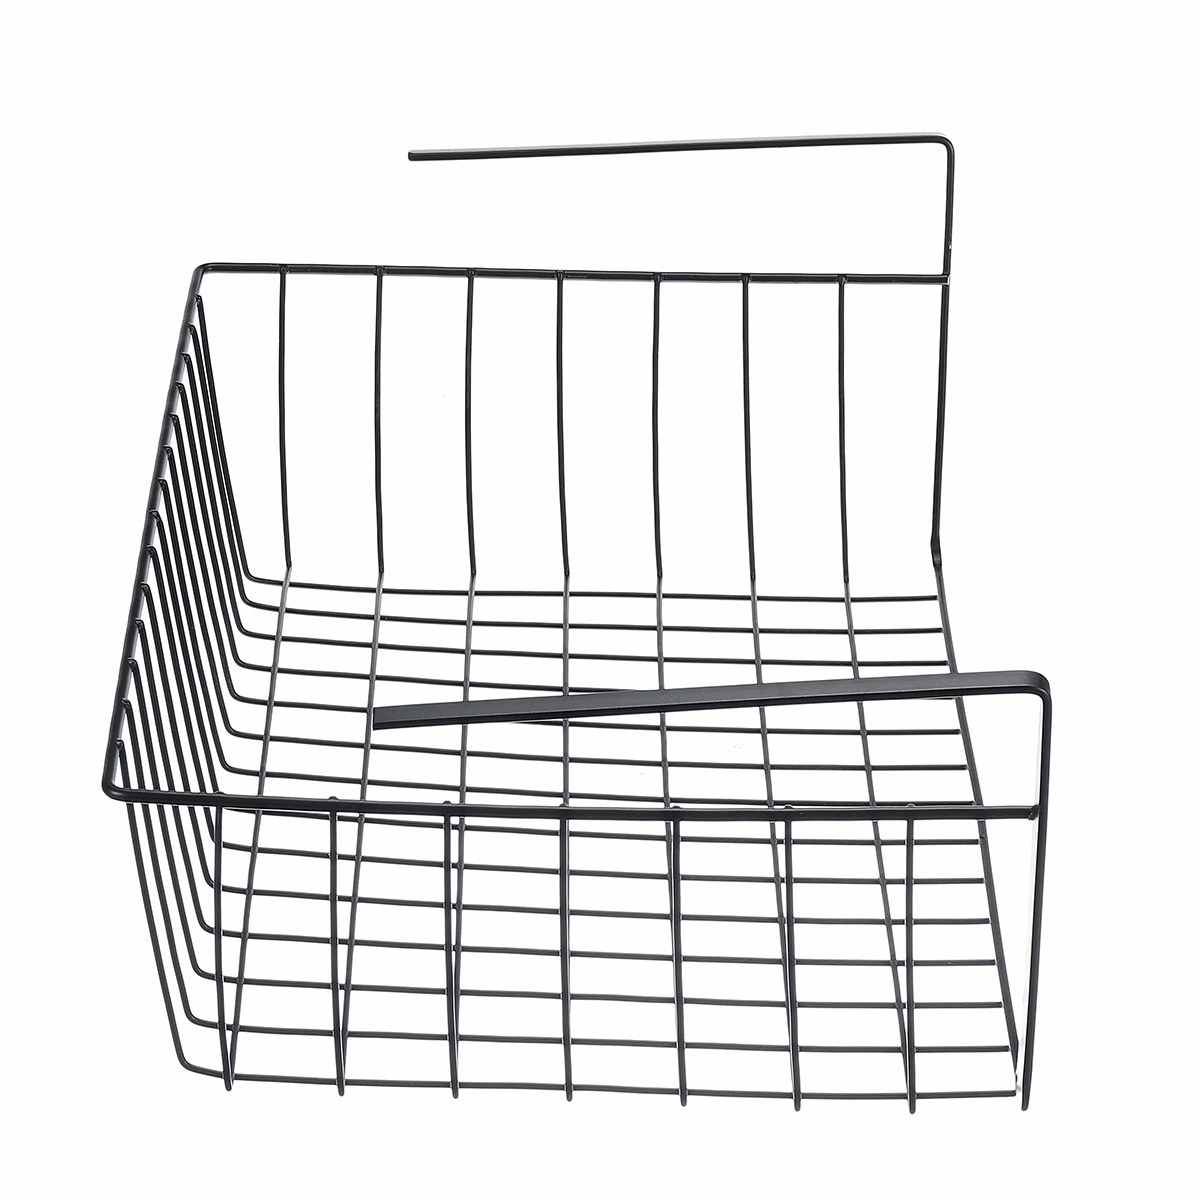 Under-Shelf-Storage-Hanging-Rack-Kitchen-Holder-Basket-Table-Cabinet-Organizer-1703470-4